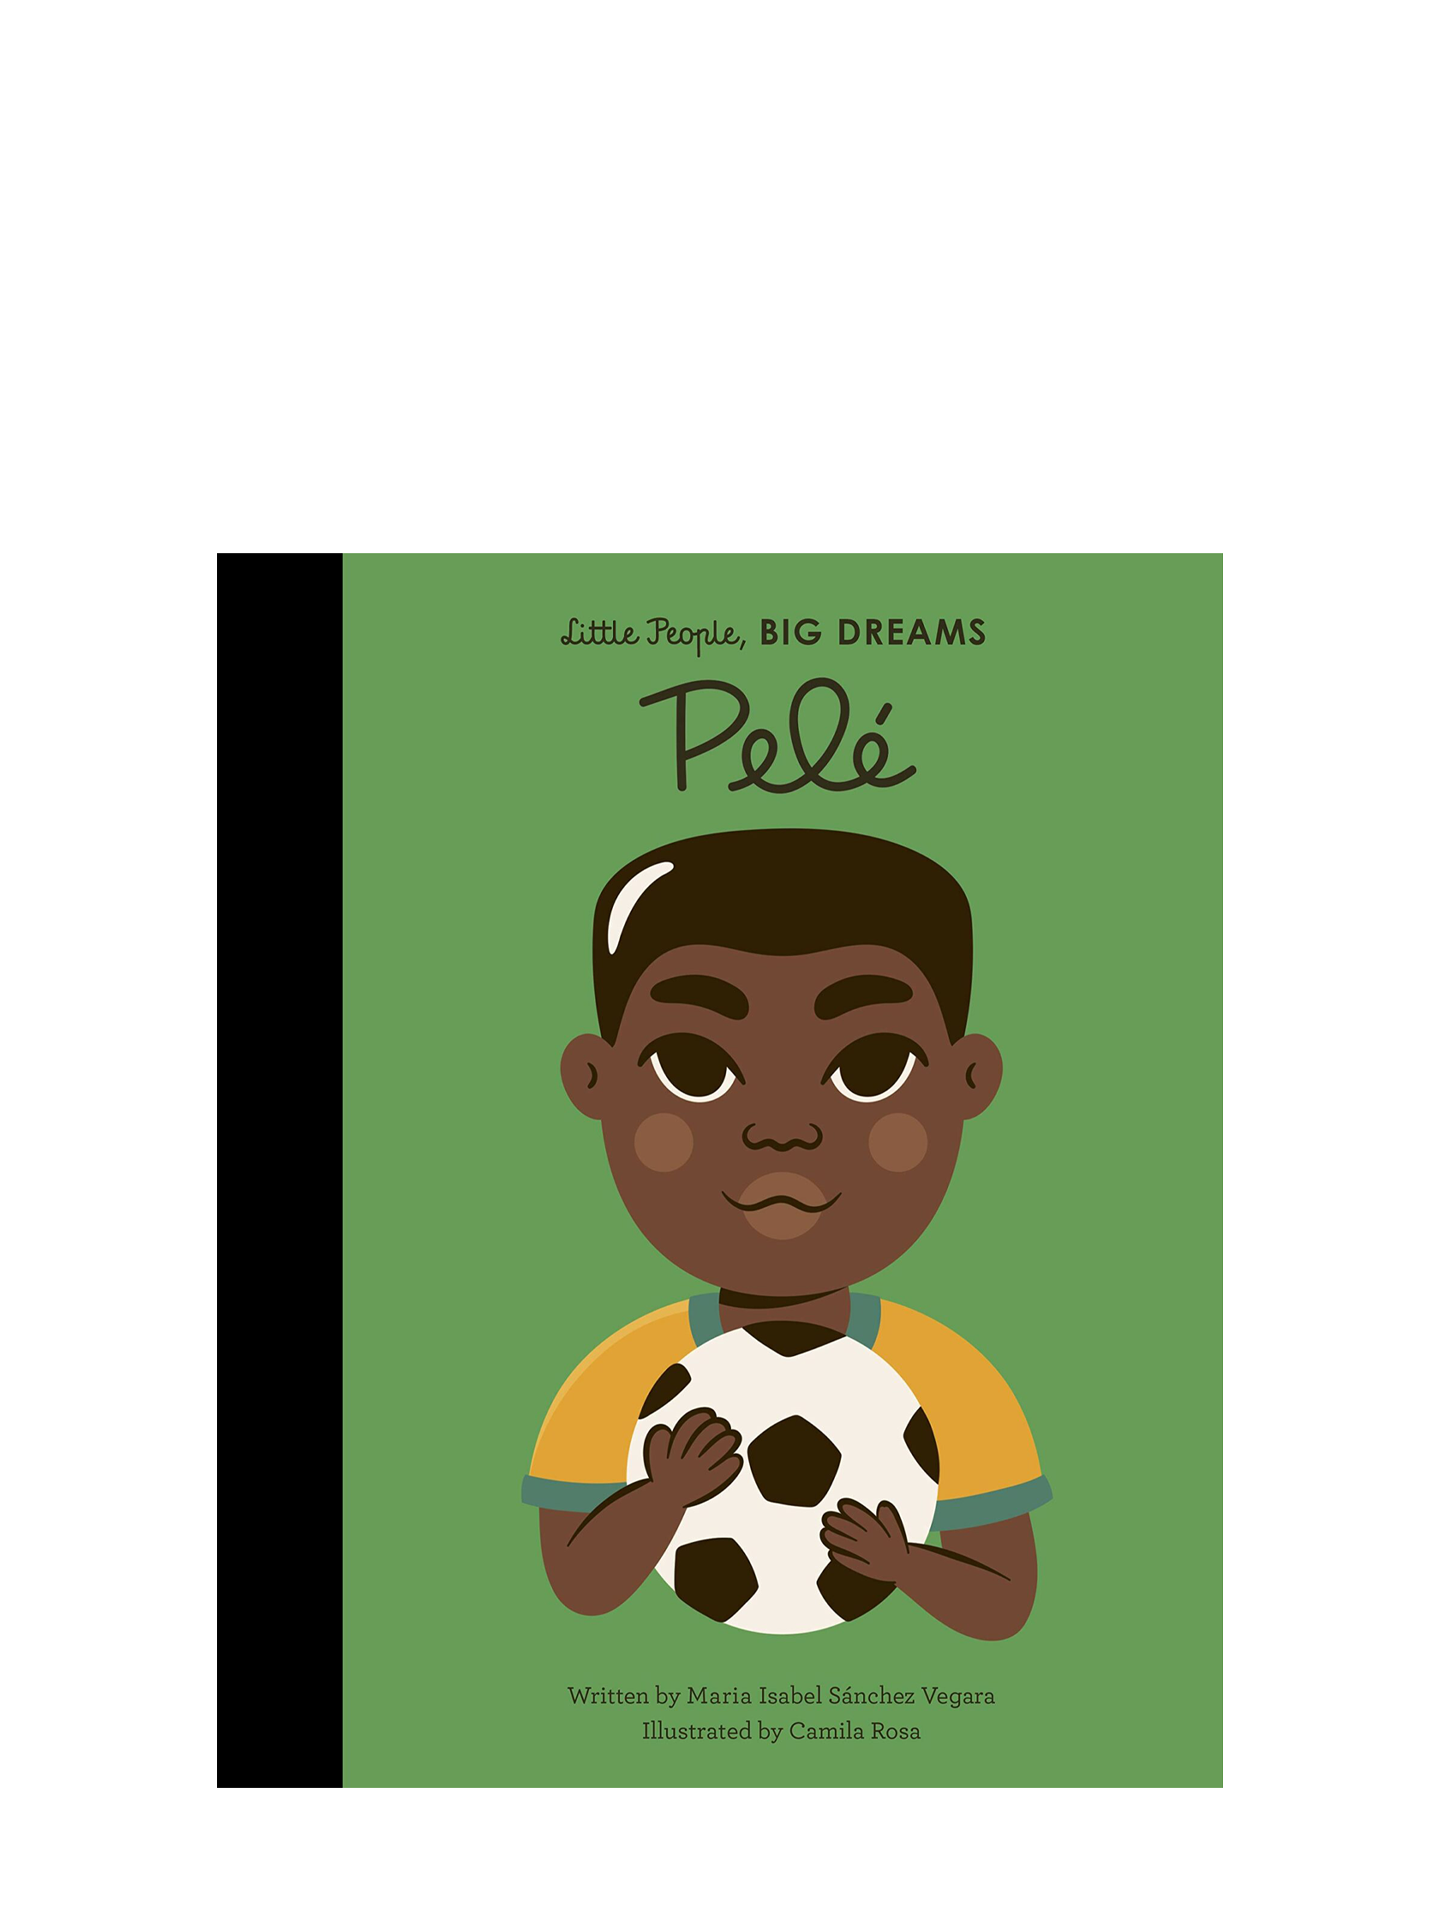 Little People, Big Dreams: Pelé